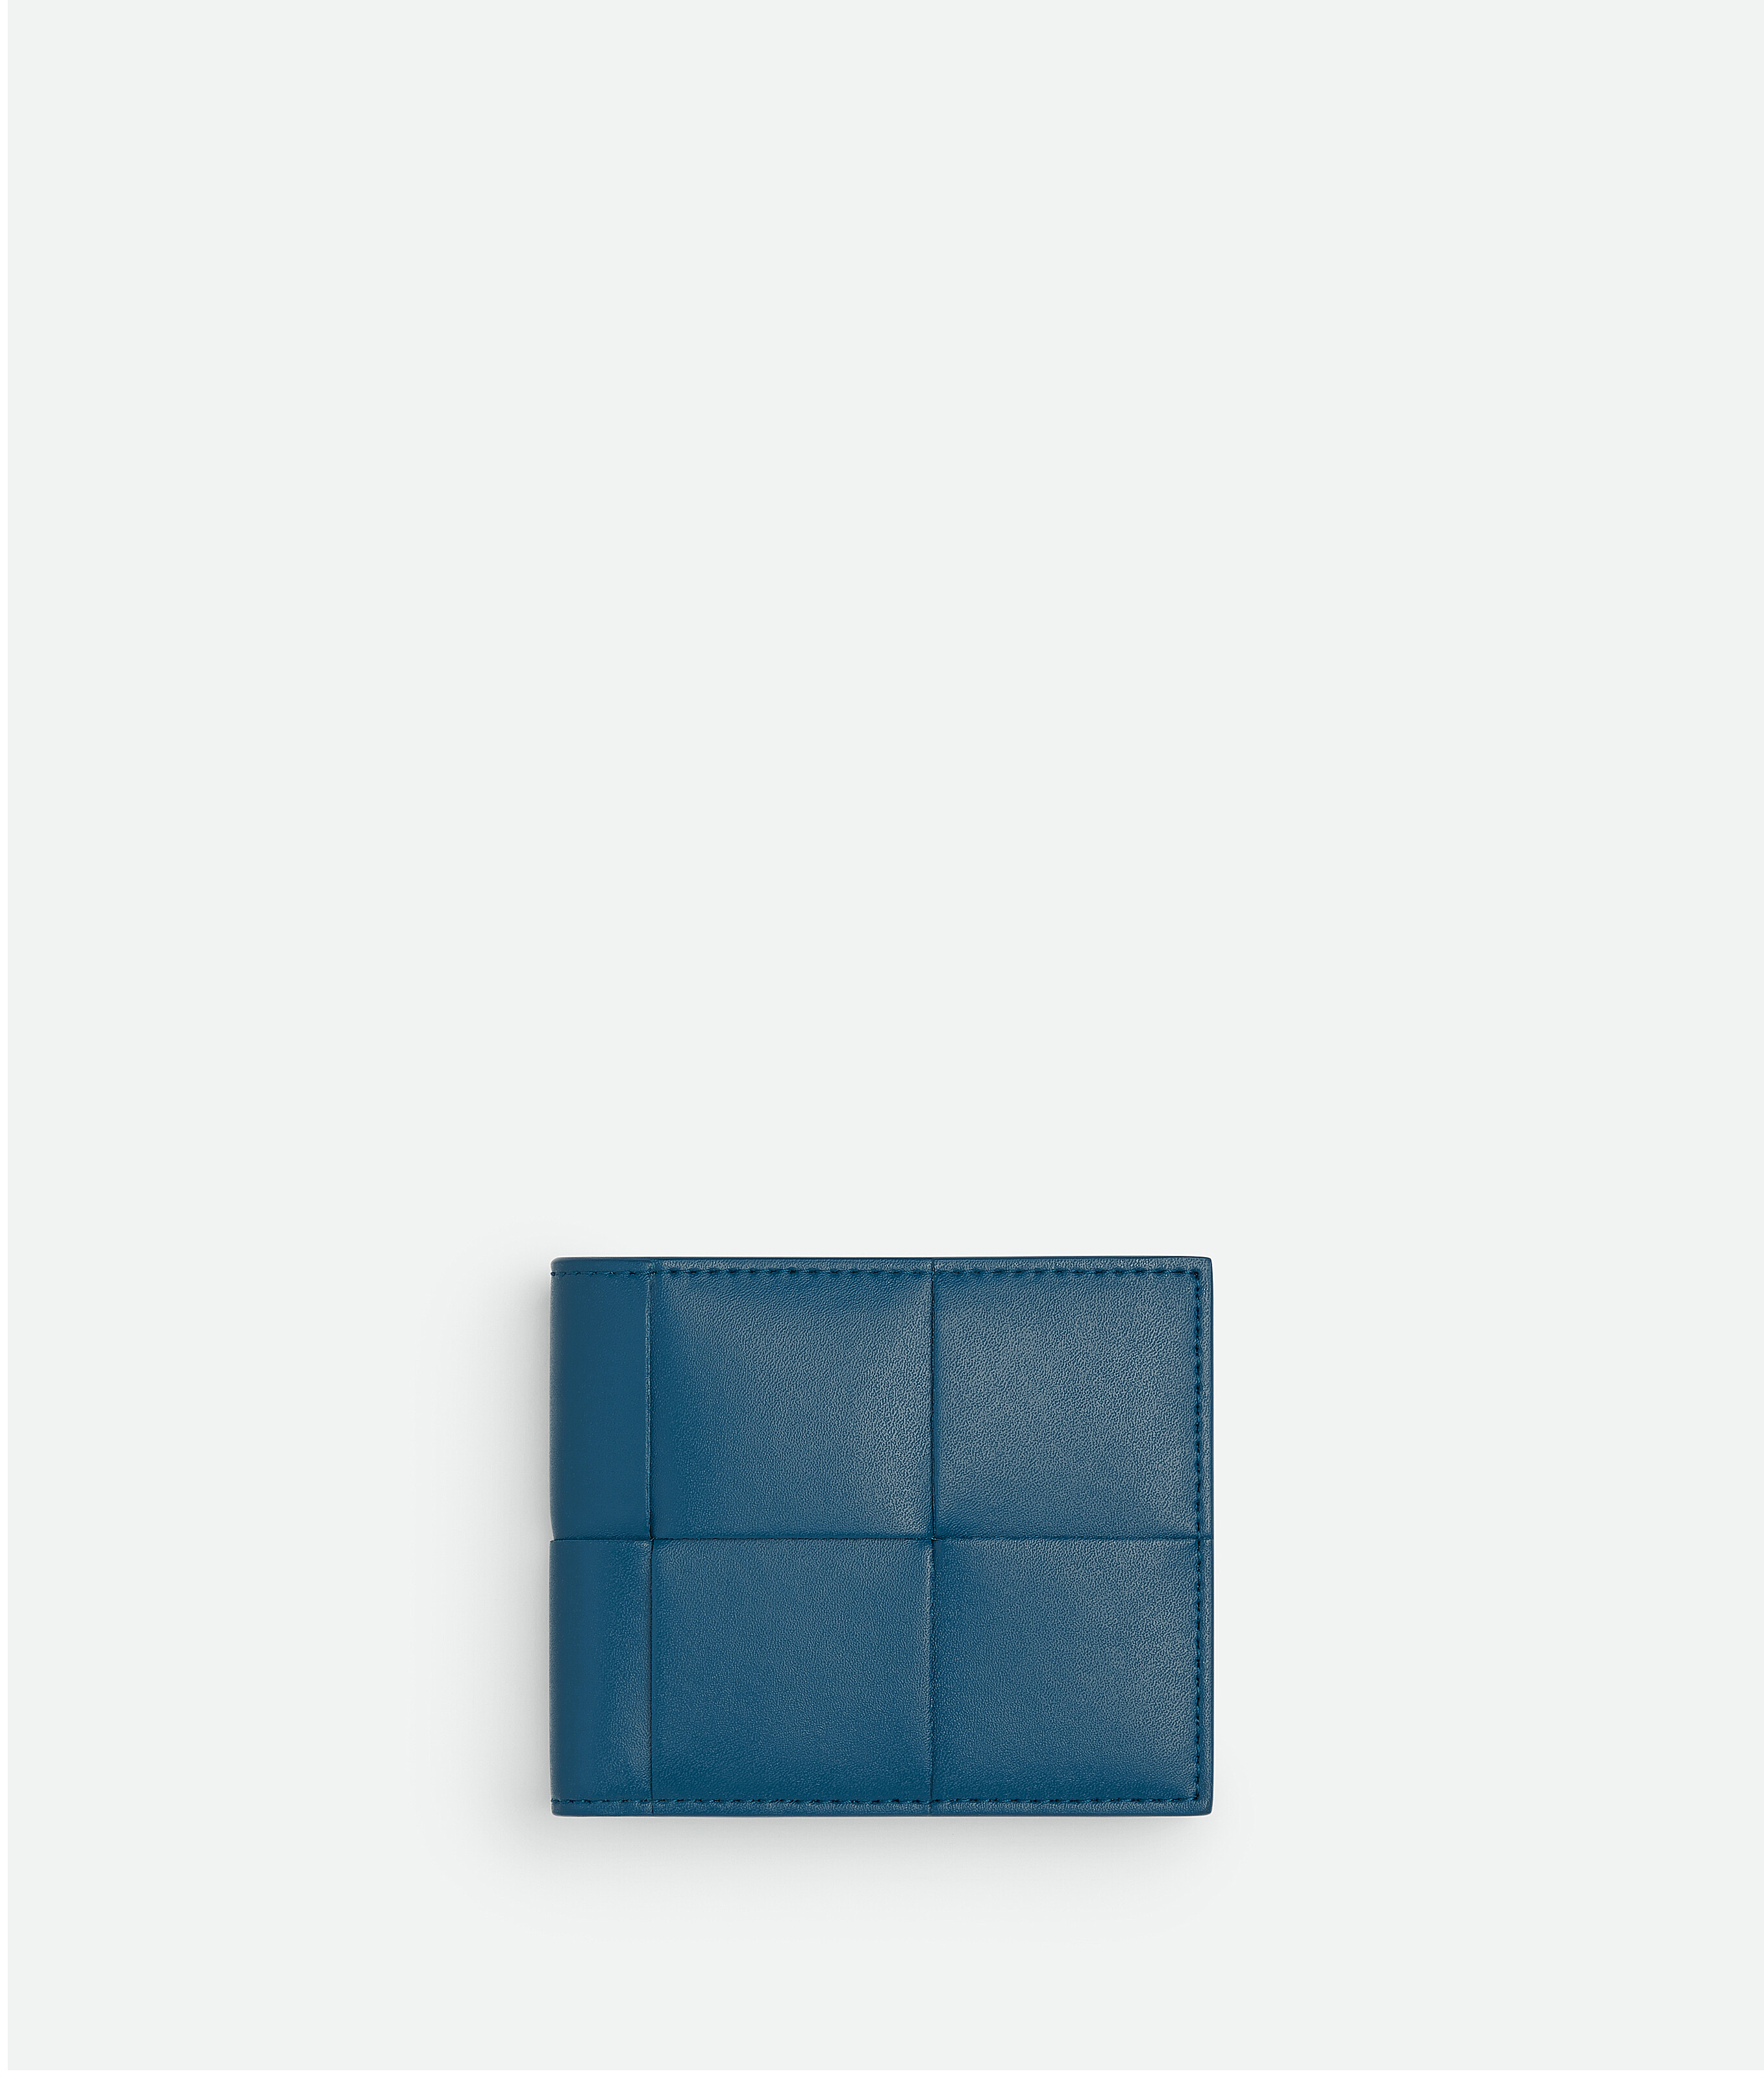 イントレチャートボッテガヴェネタ カセット二つ折りウォレット 限定色 財布 Bottega